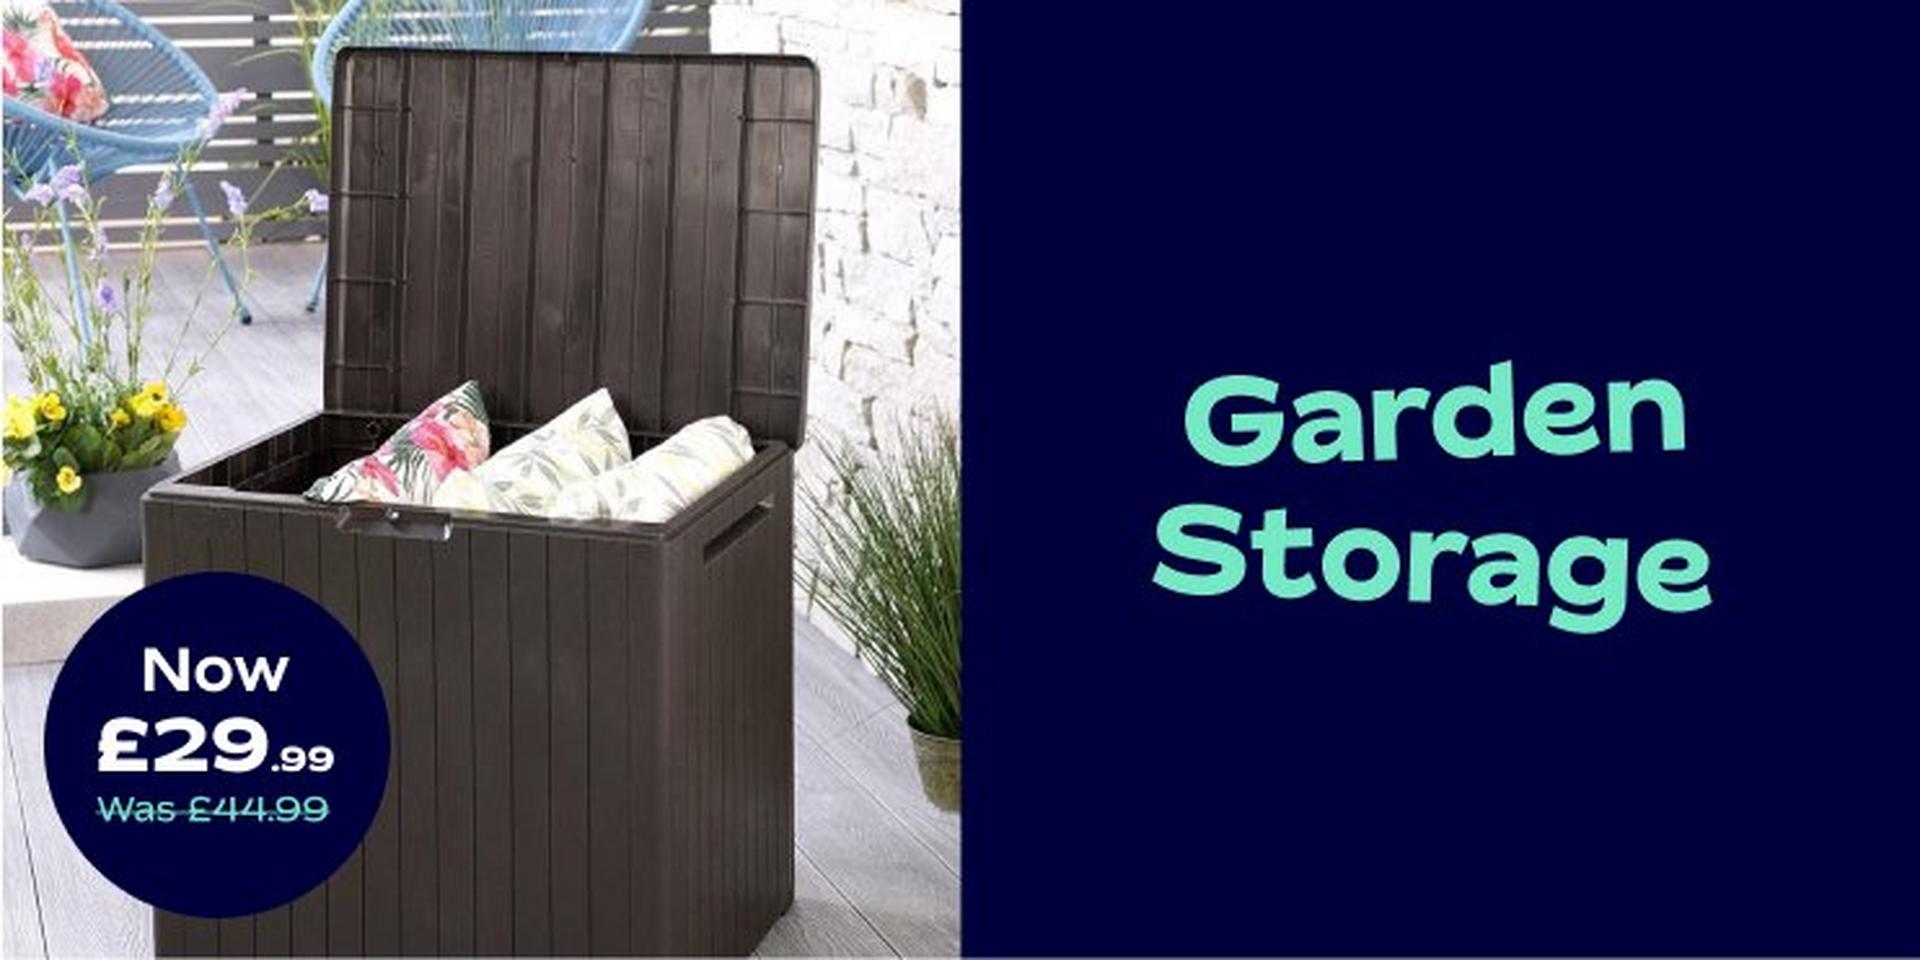 Garden storage